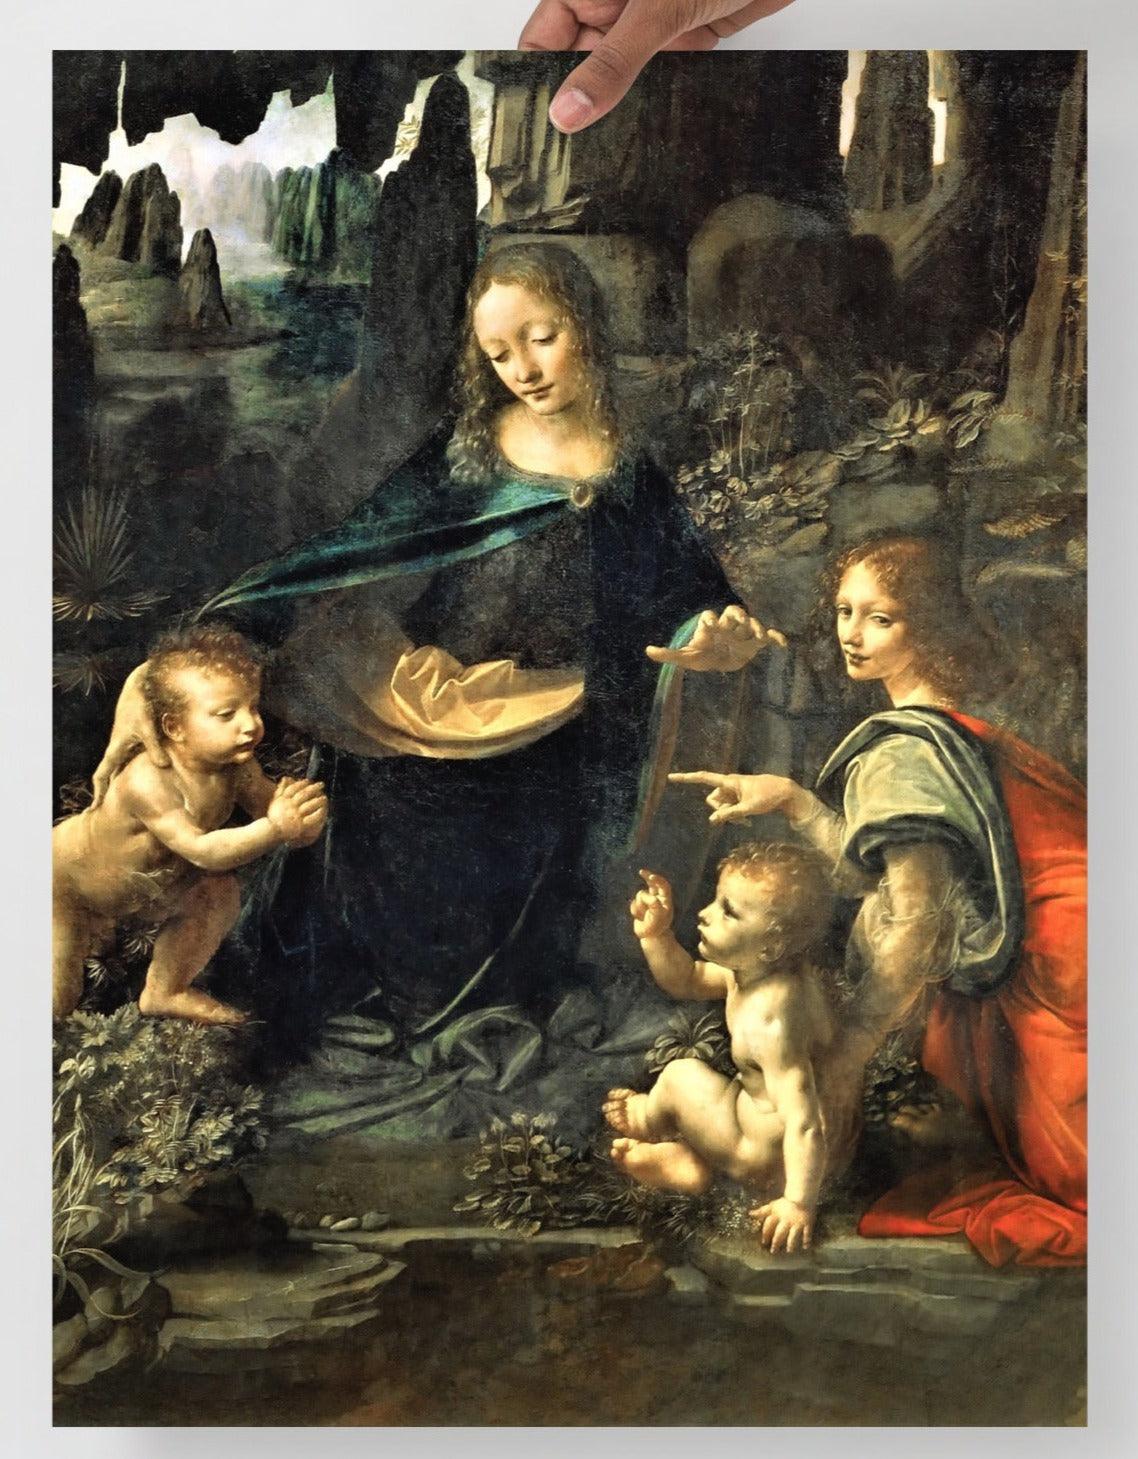 A Virgin of the Rocks by Leonardo Da Vinci  poster on a plain backdrop in size 18x24”.